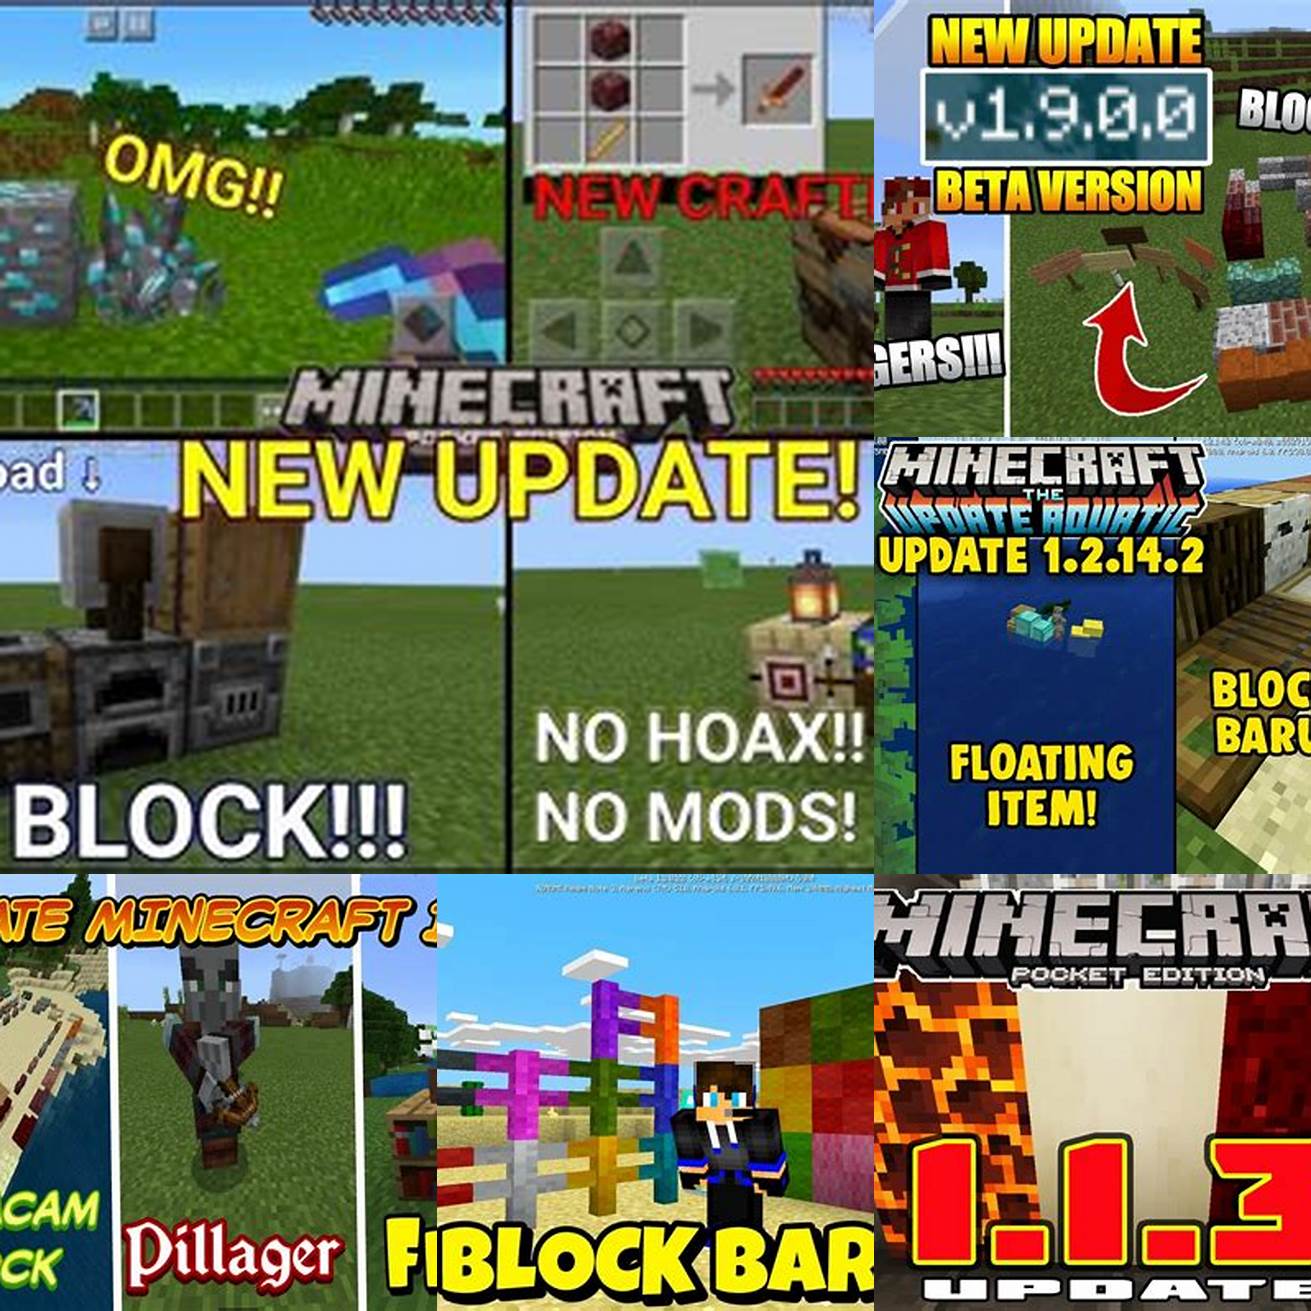 1 Block Baru - Terdapat banyak blok baru yang dapat Anda temukan di Minecraft 118 Beberapa di antaranya adalah blok tembok batu dan blok serpihan komposter